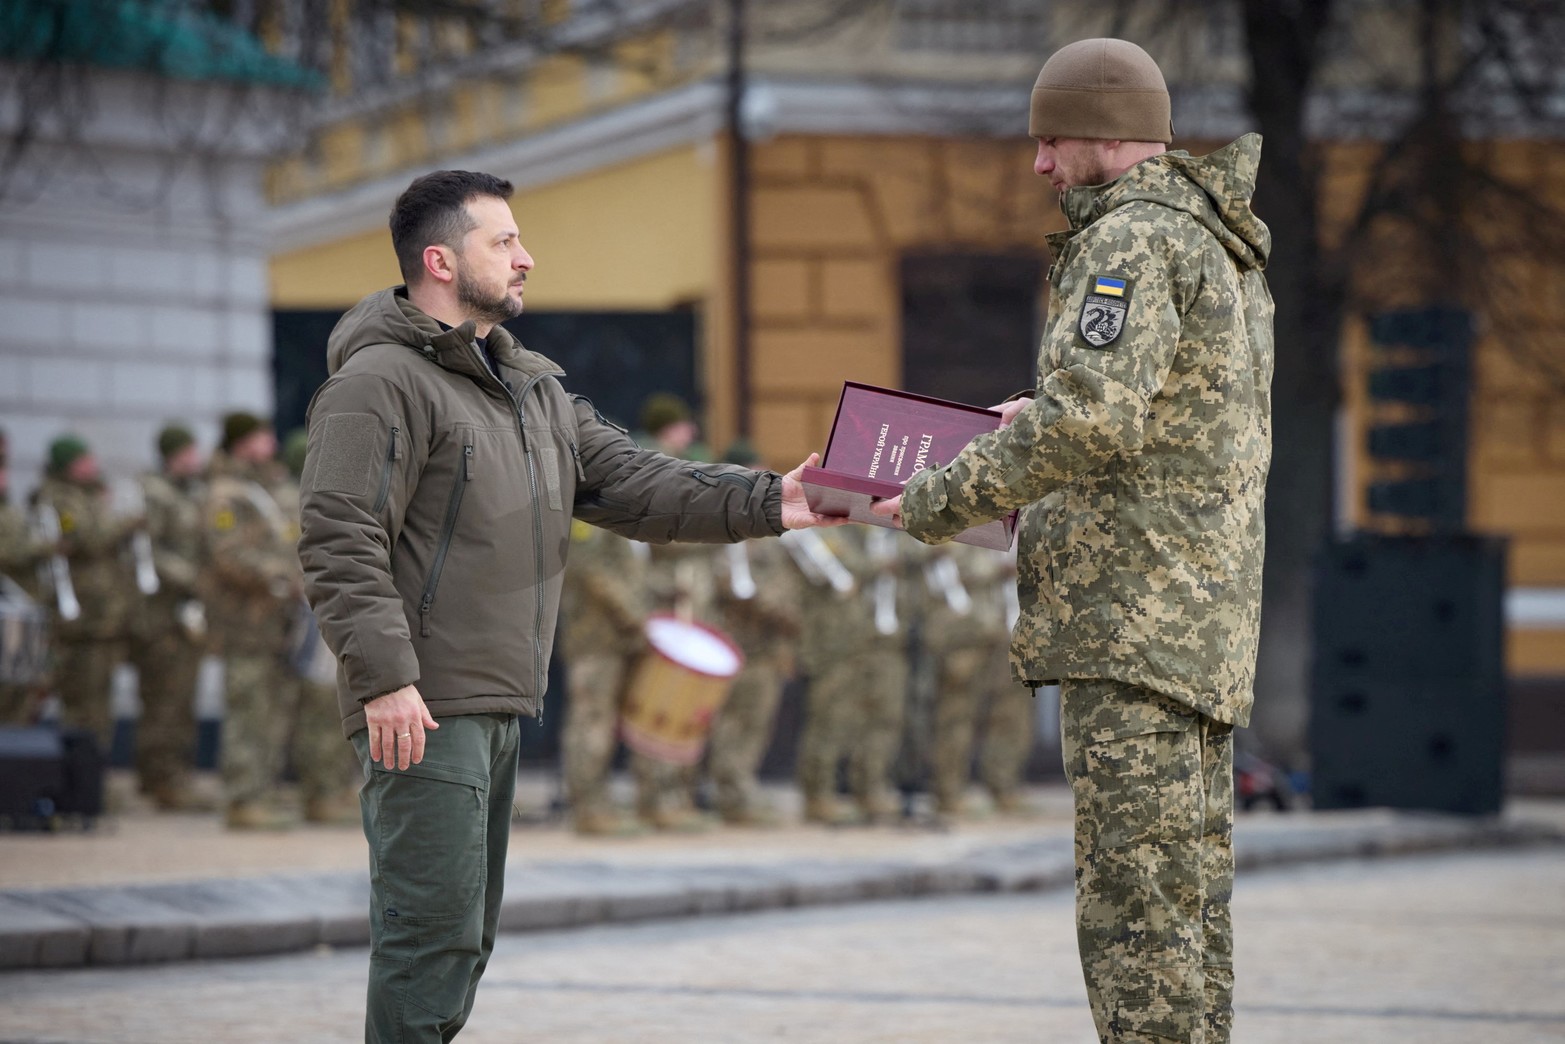 El presidente de Ucrania, Volodymyr Zelenskiy, entrega una bandera a un militar durante una ceremonia dedicada al primer aniversario de la invasión rusa de Ucrania, en medio del ataque de Rusia a Ucrania, en Kiev.